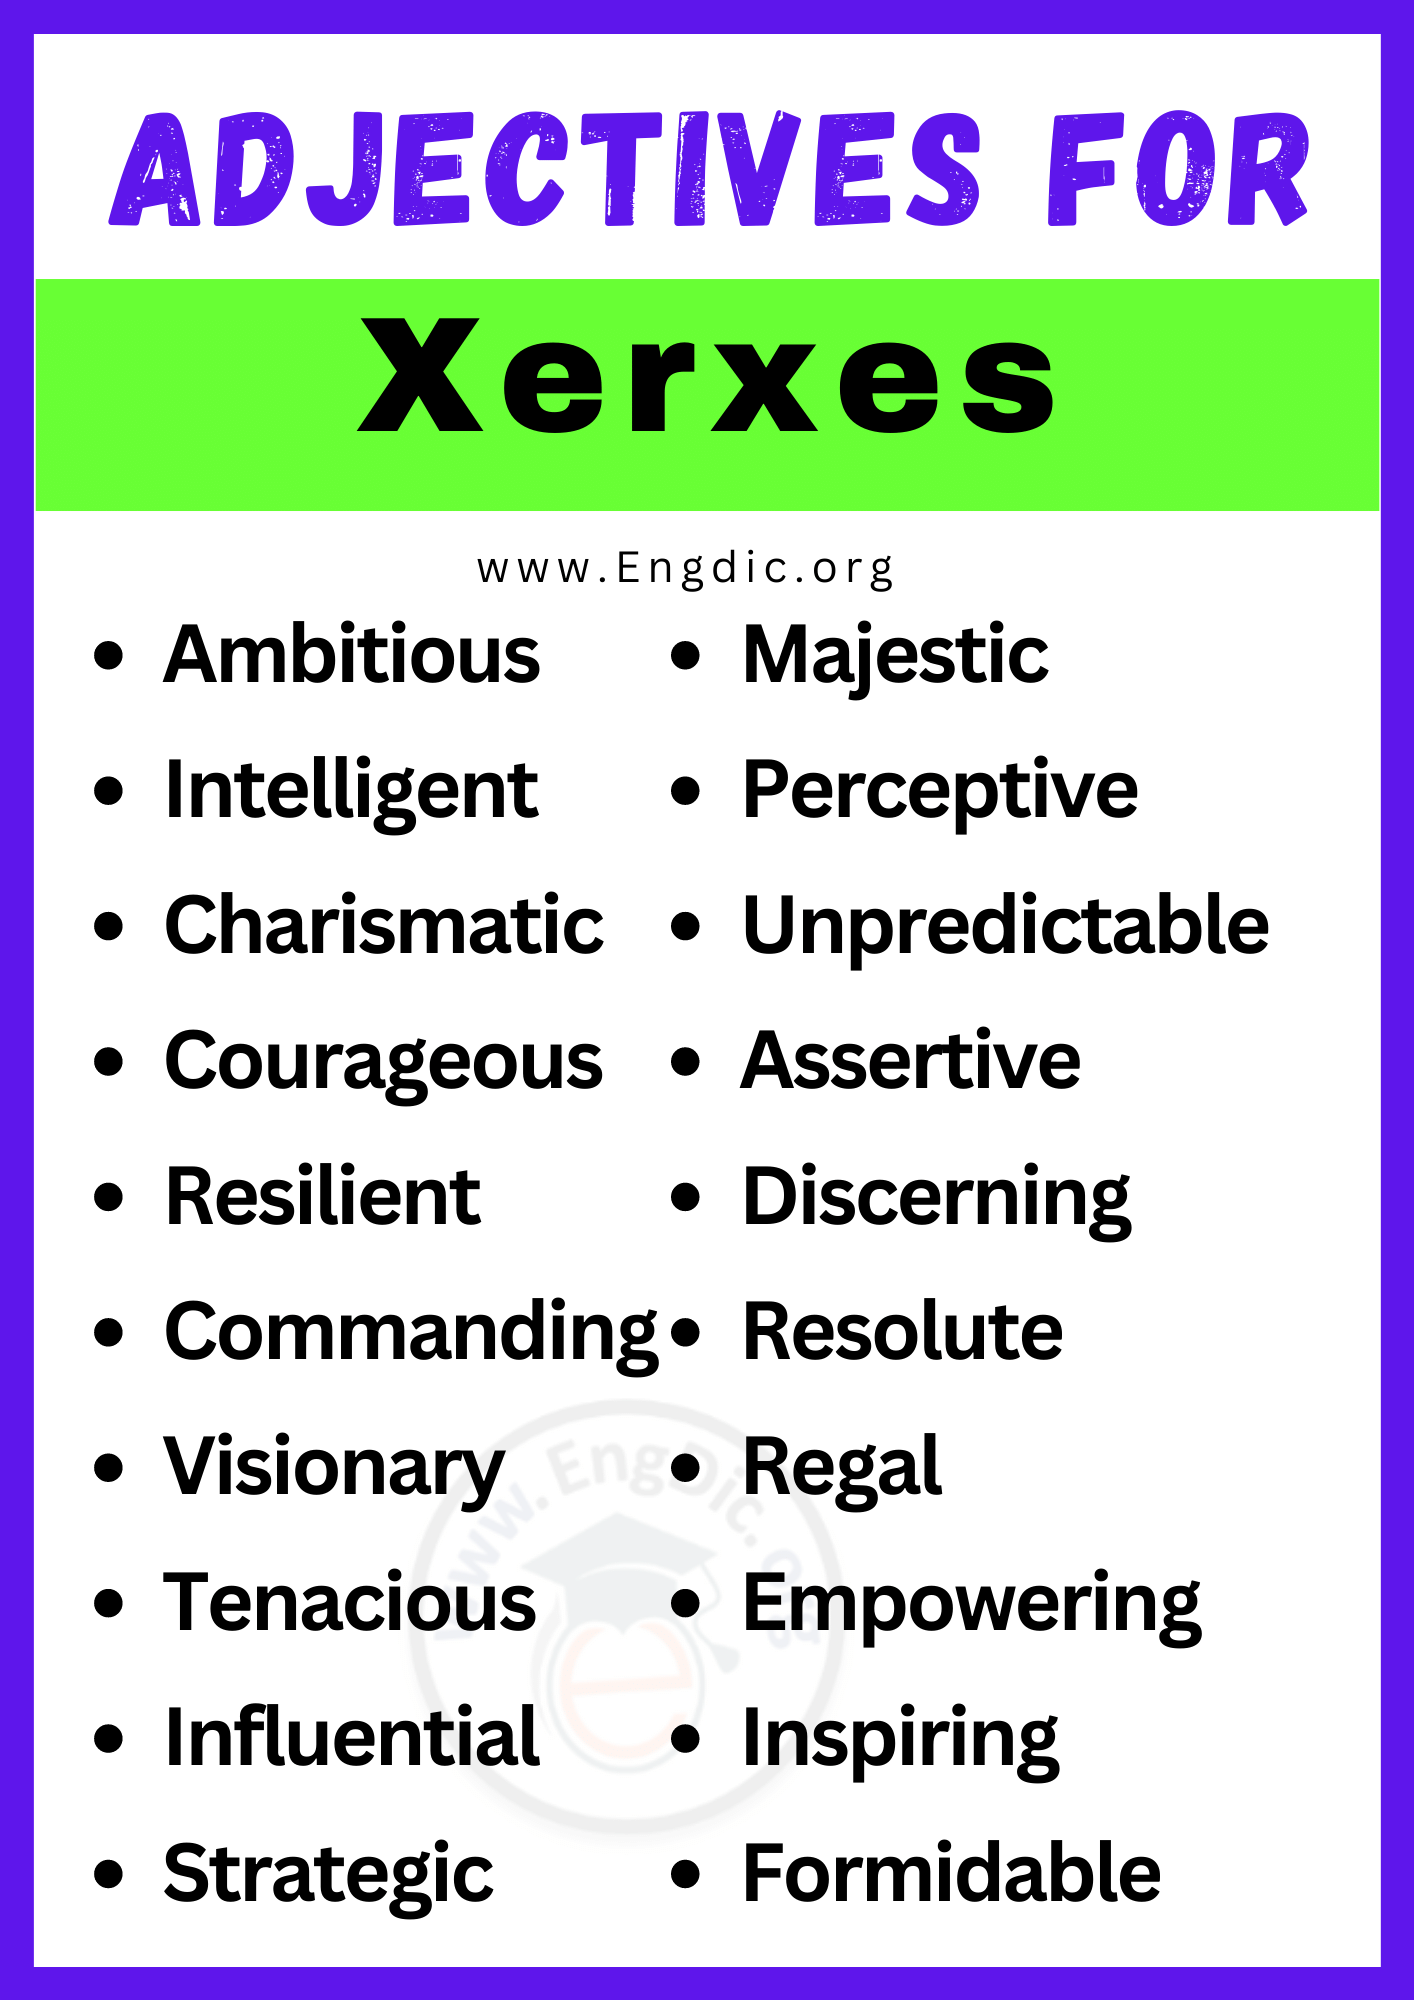 Adjectives for Xerxes